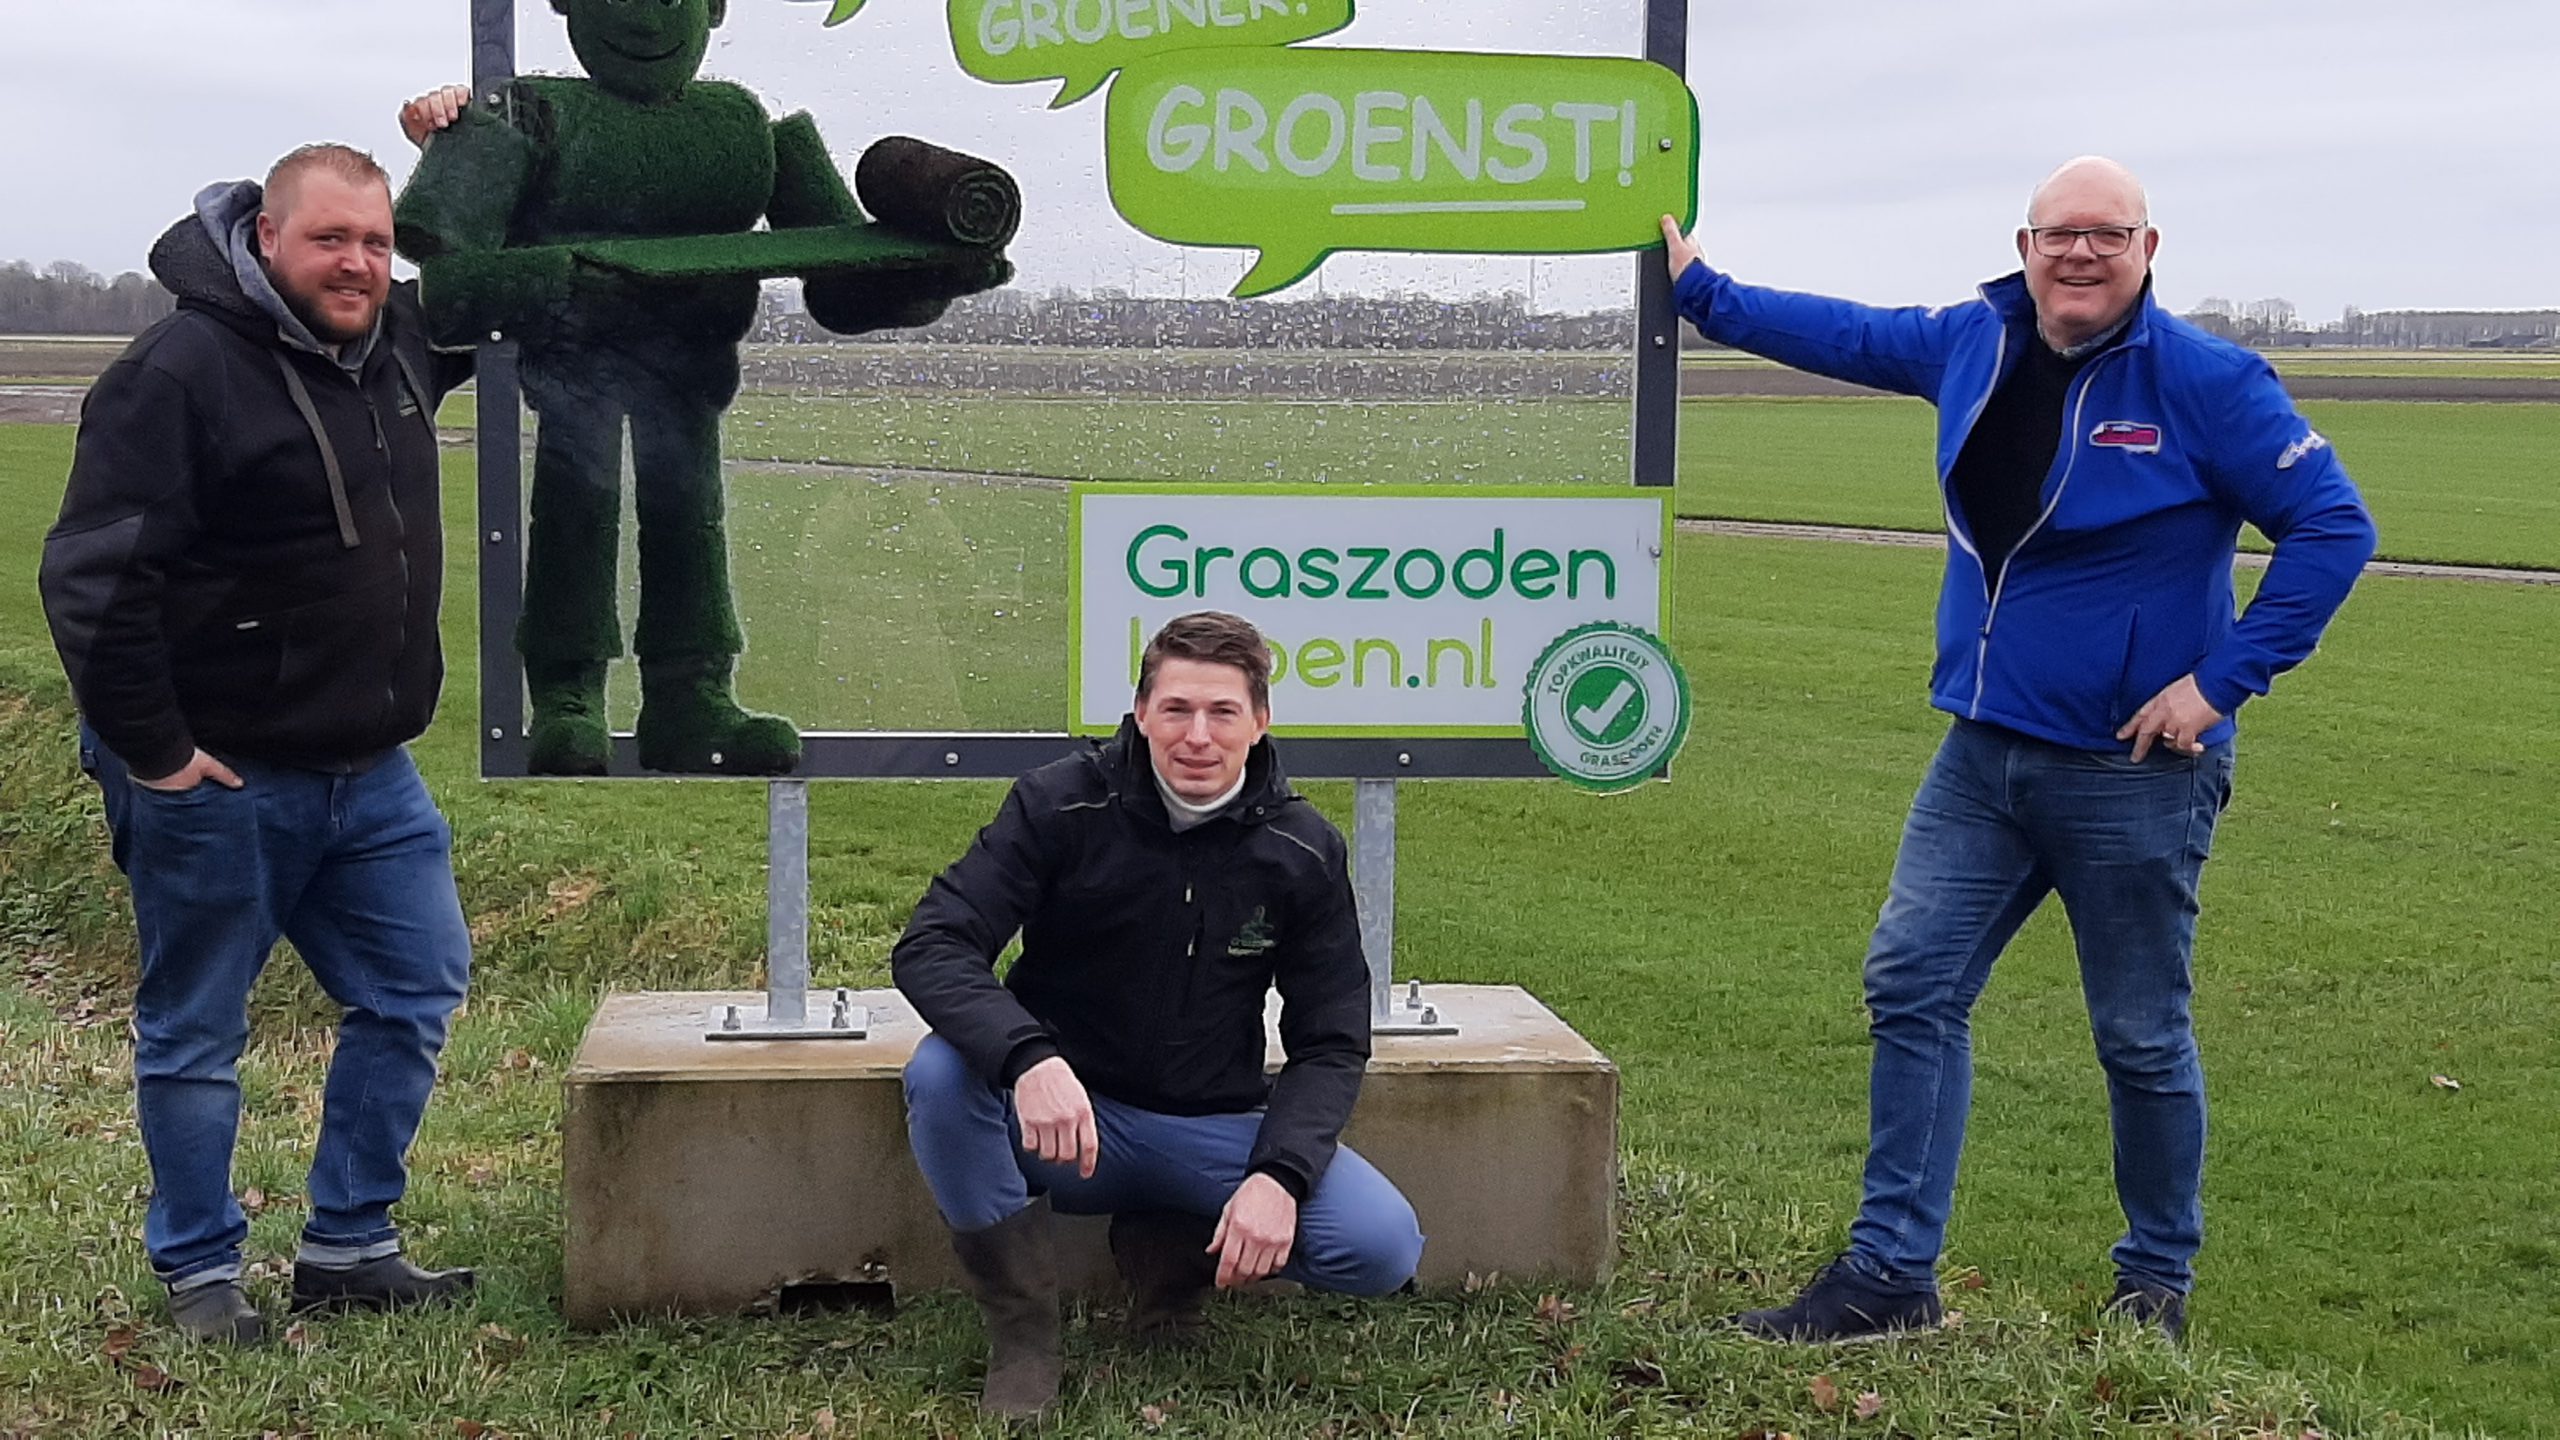 16-03: Graszodenkopen.nl in Continu in Bedrijf